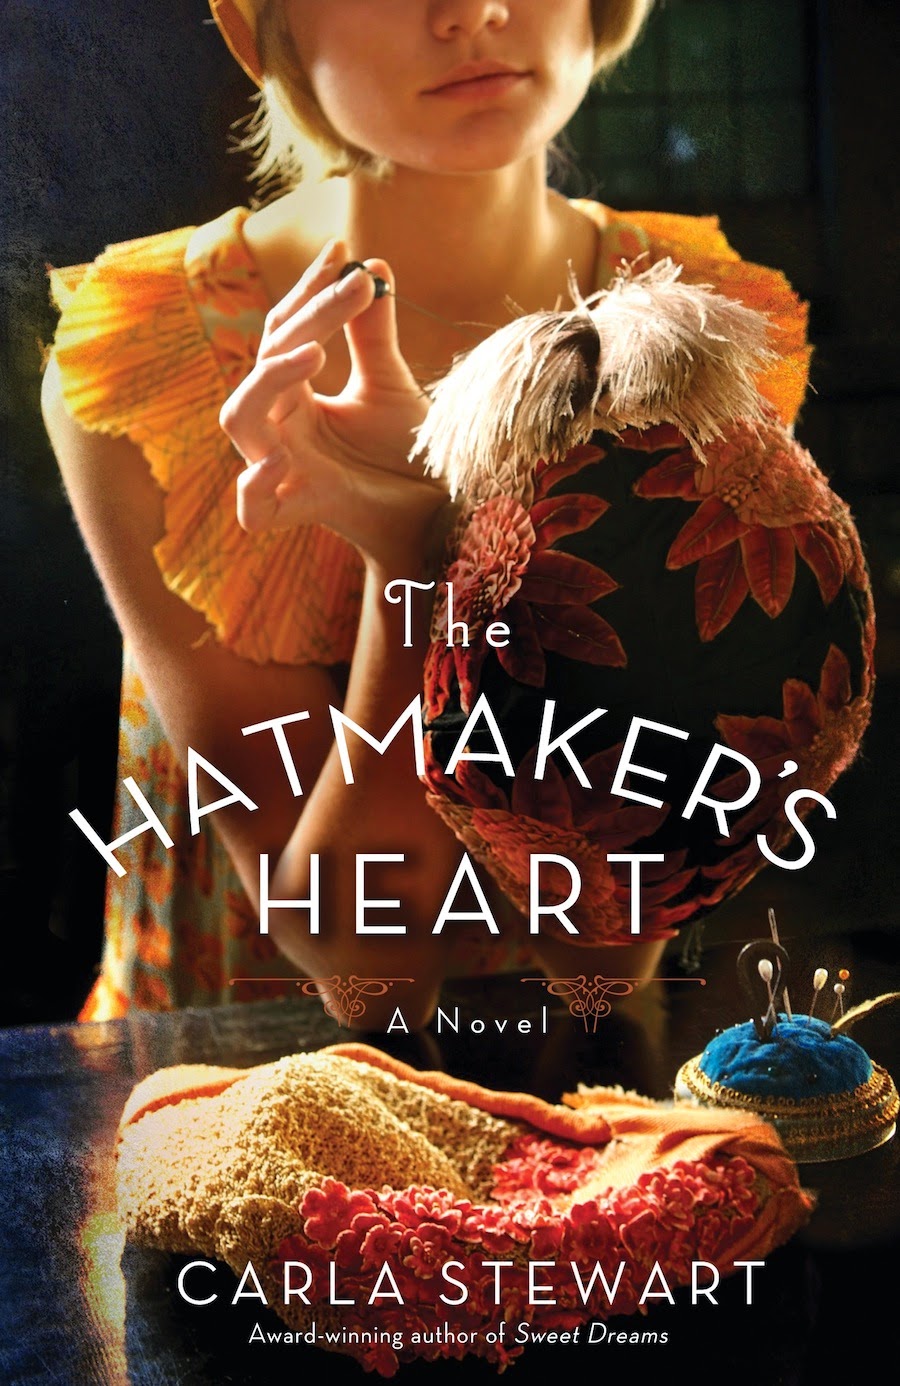 http://www.carlastewart.com/2013/10/17/the-hatmakers-heart/